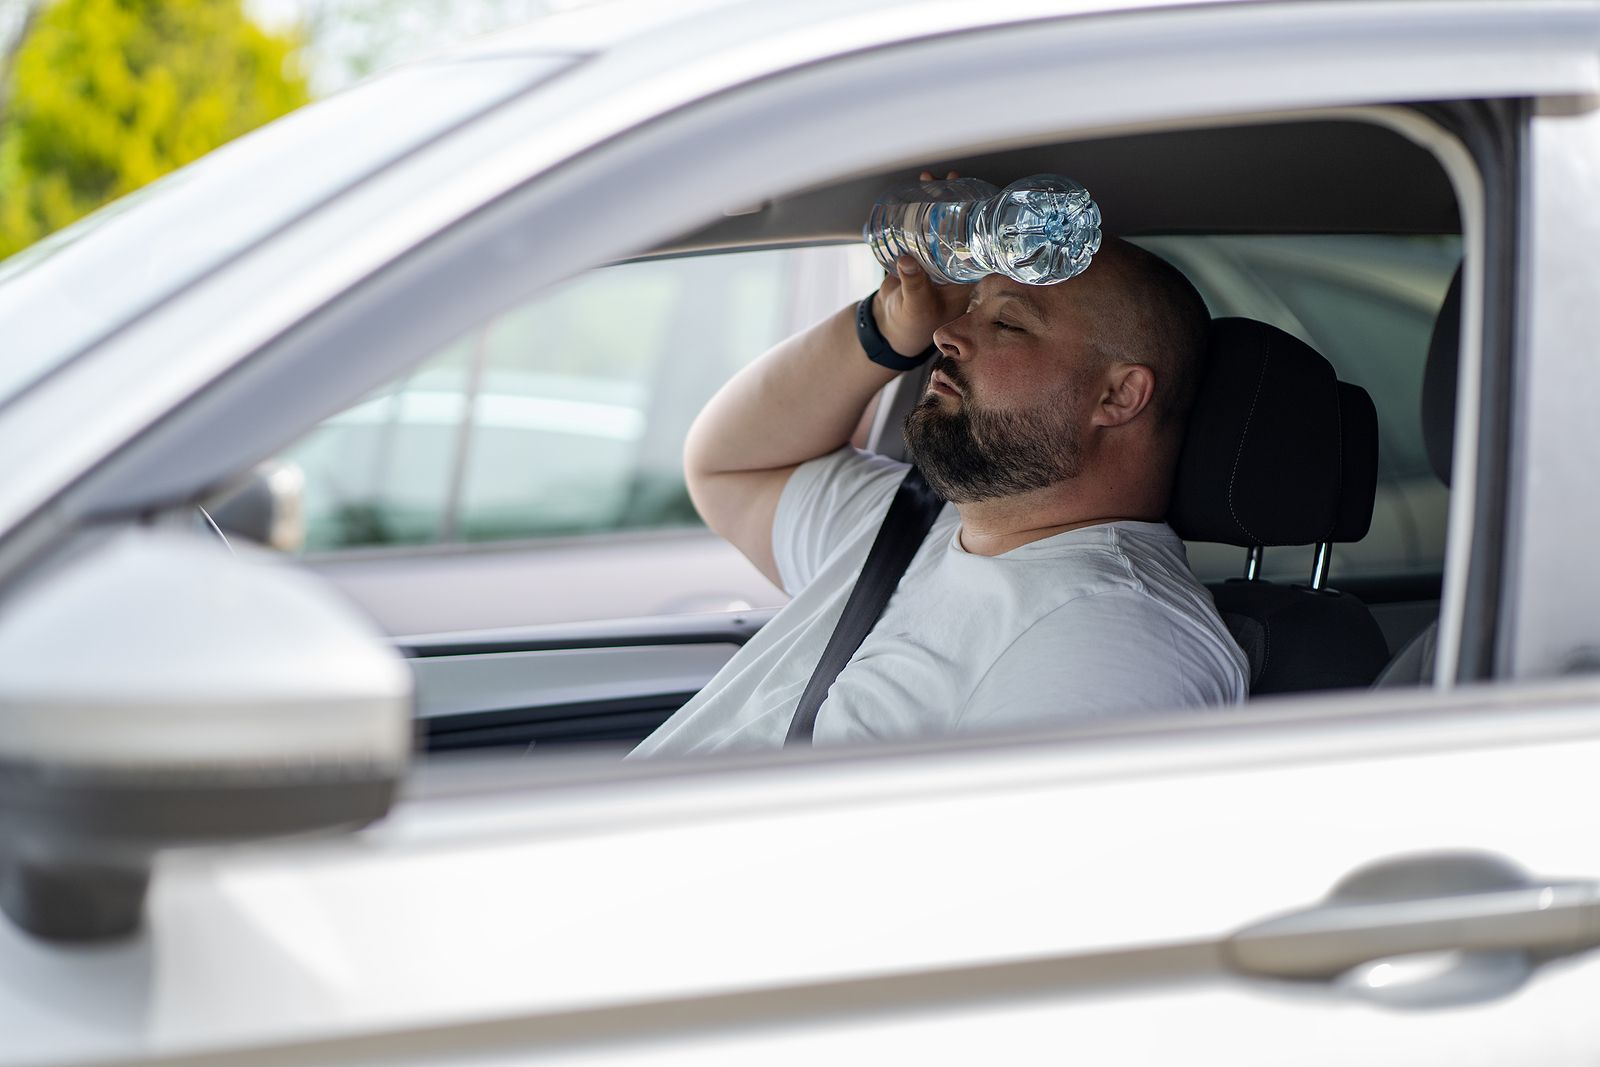 "Conducir con el coche a 35 o 40ºC es igual de peligroso que haber bebido cinco cervezas"